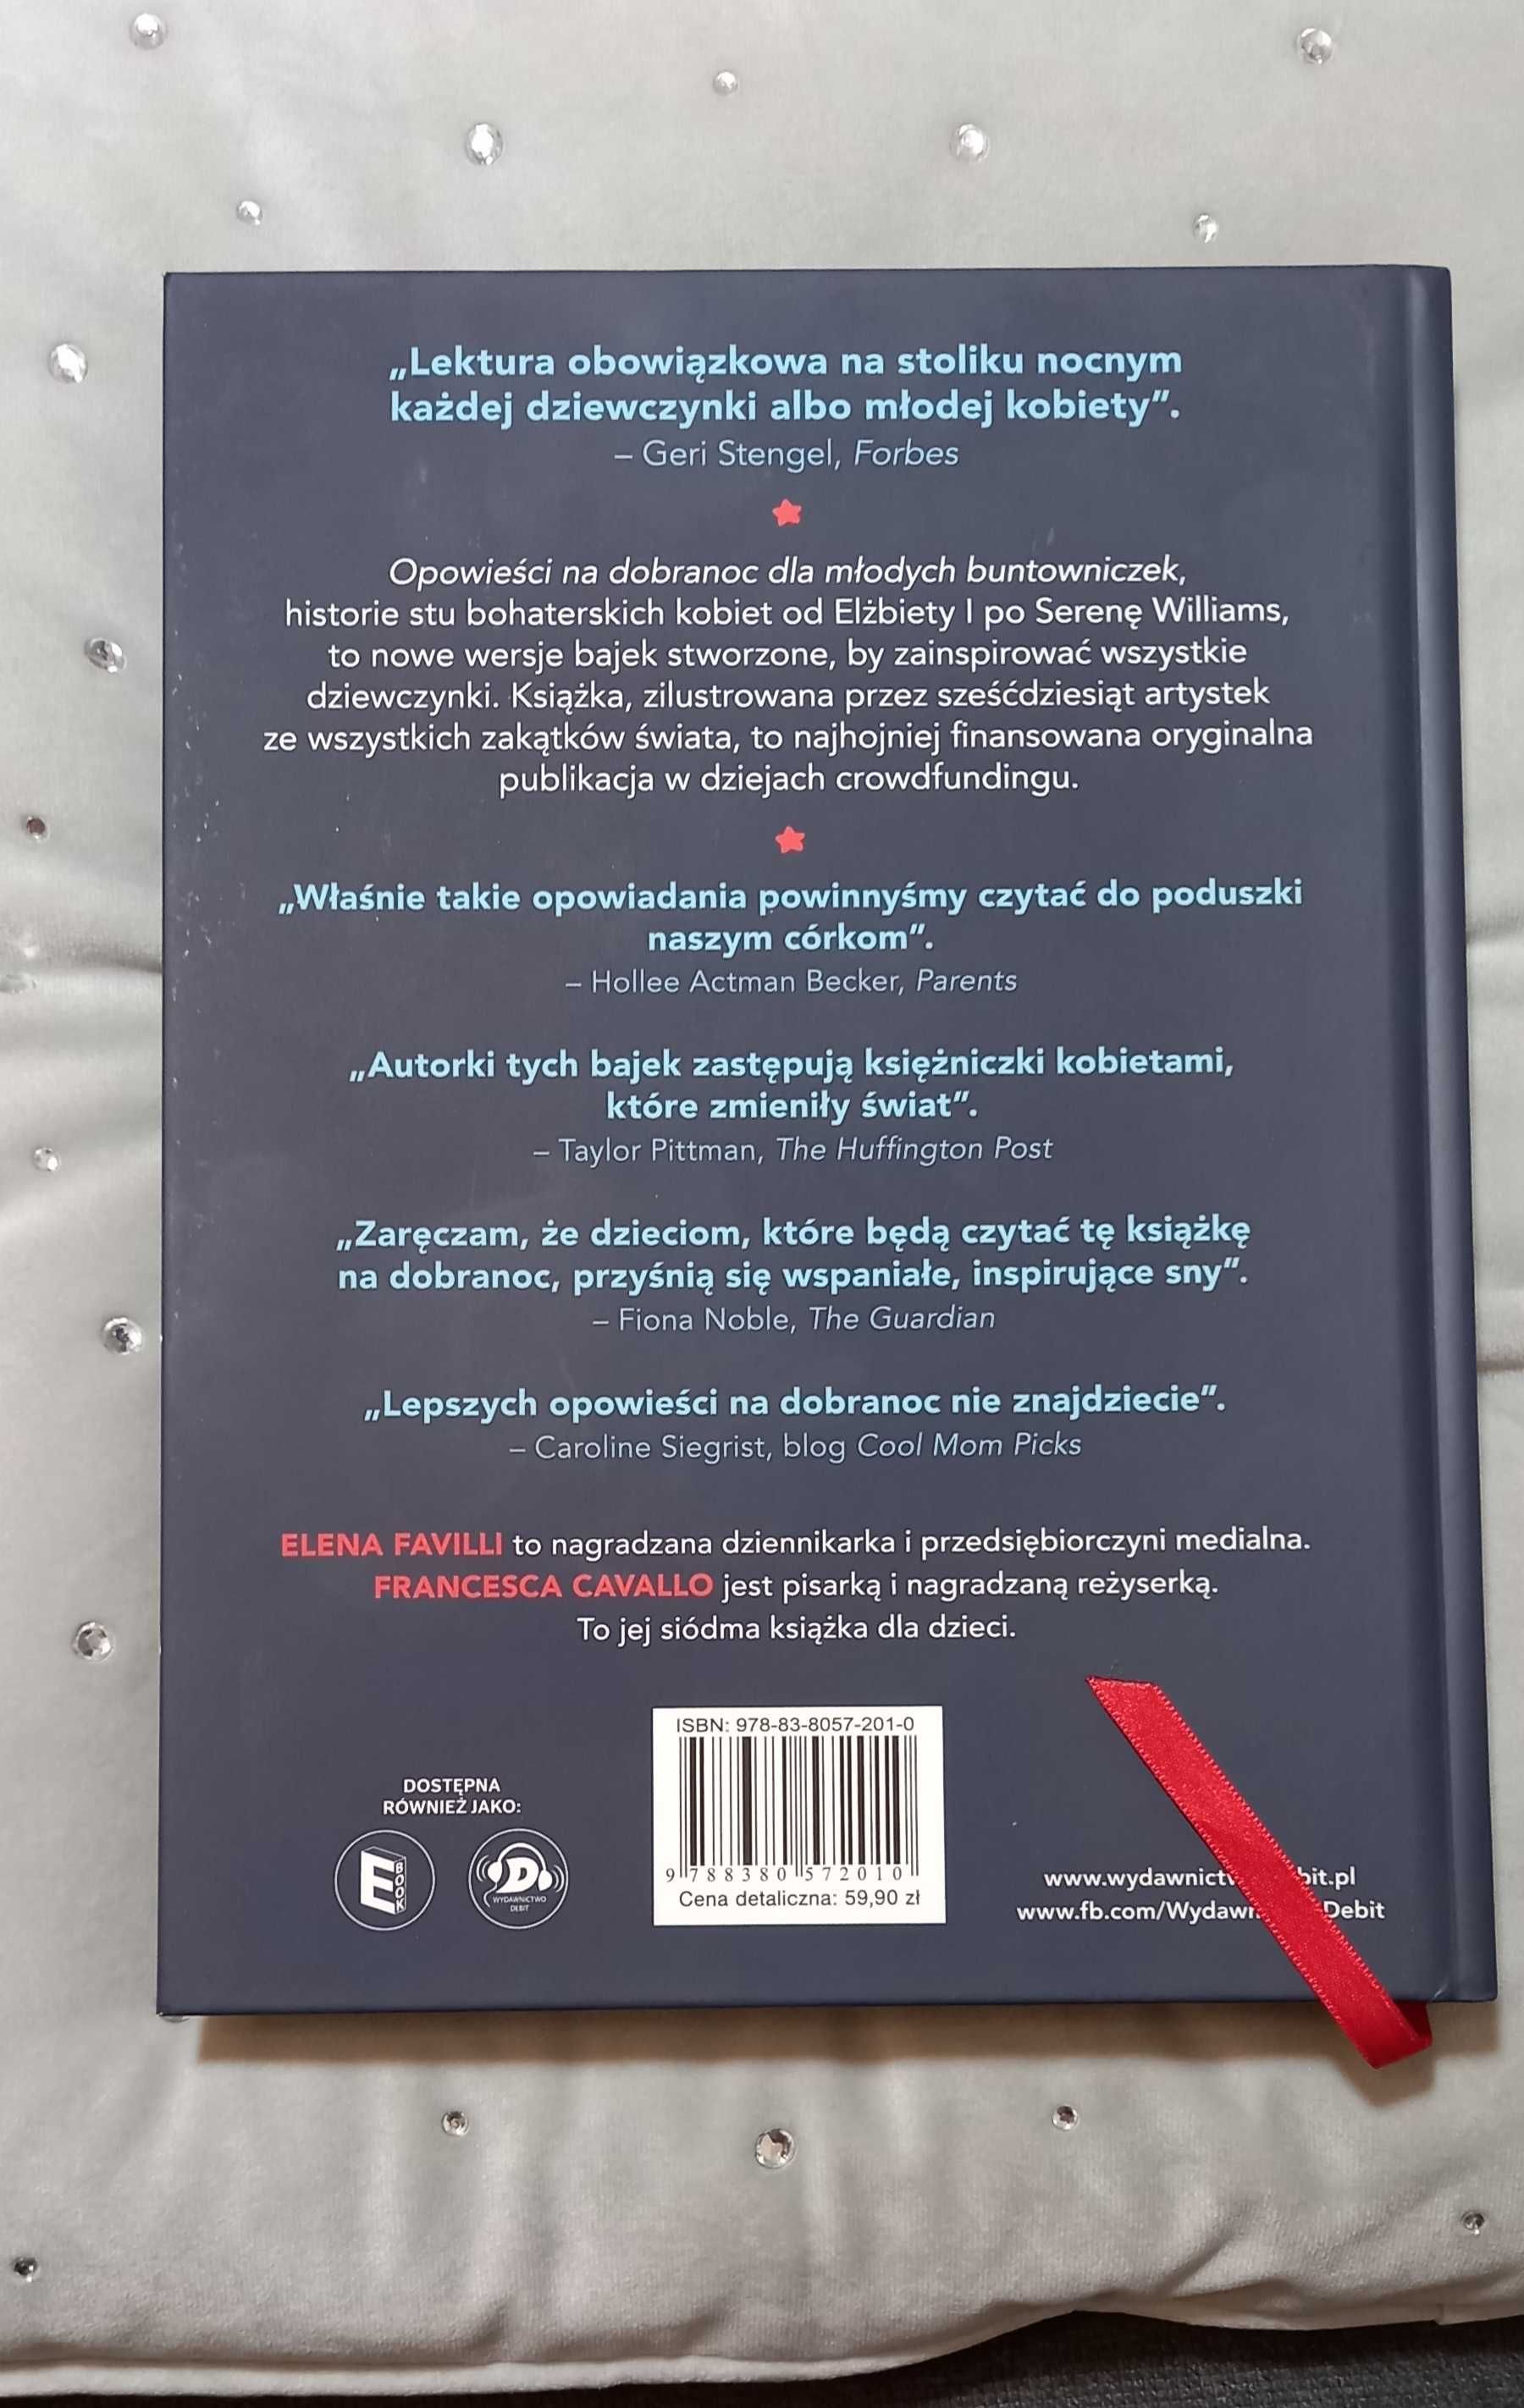 Opowieści młodych buntowniczek -211 stron, wyd. Debit 2017